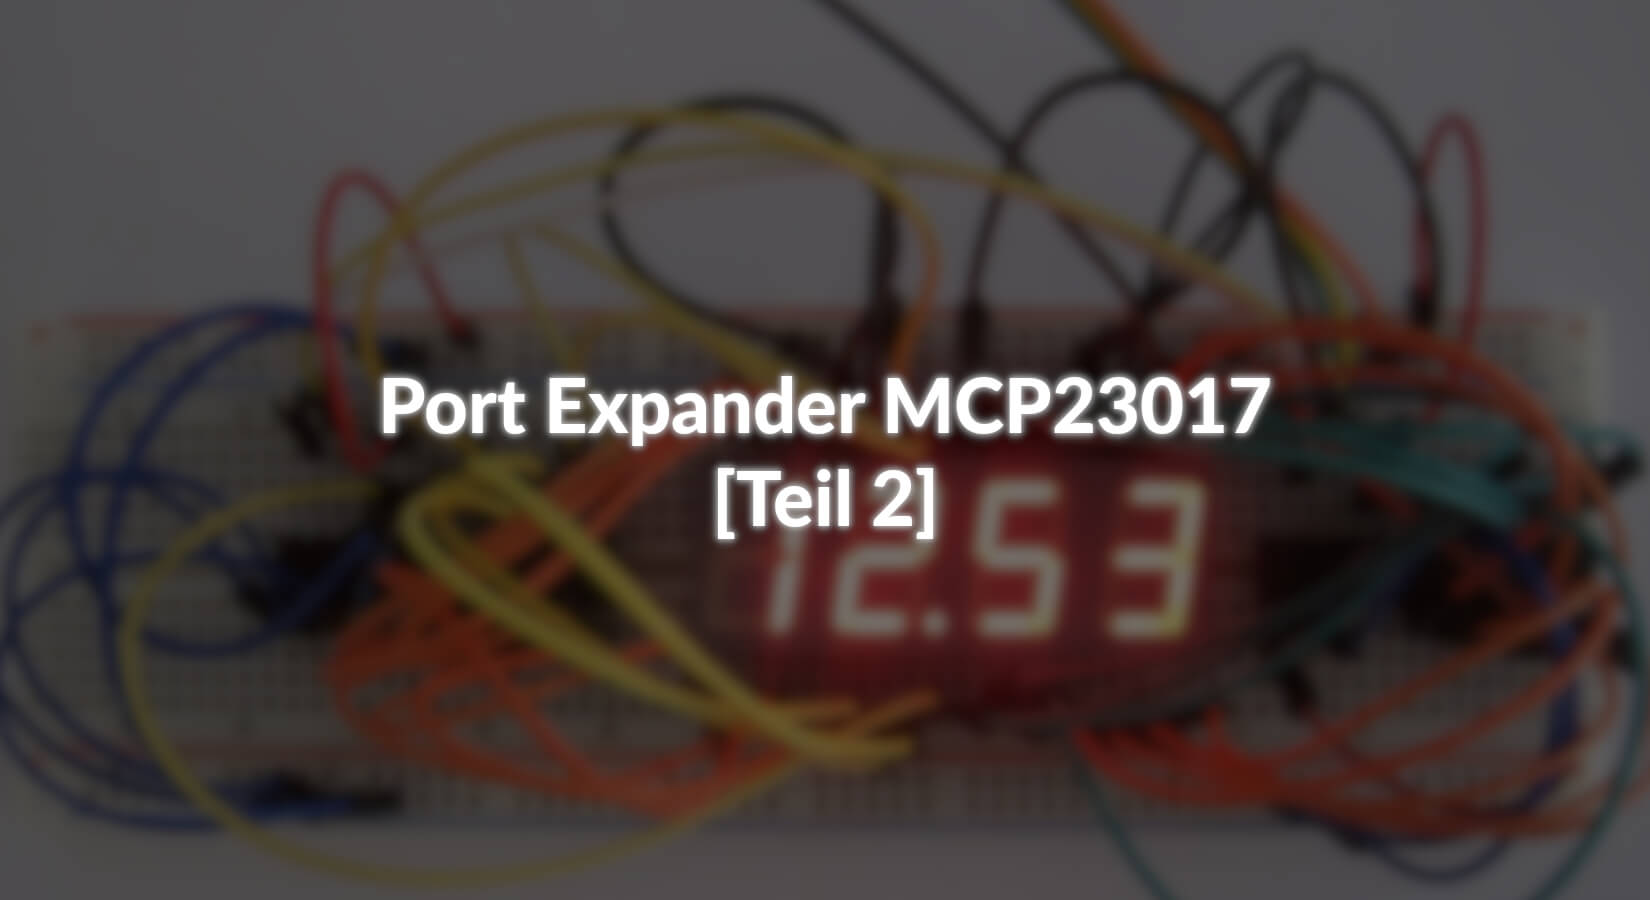 Port Expander MCP23017 - [Teil 2] - AZ-Delivery